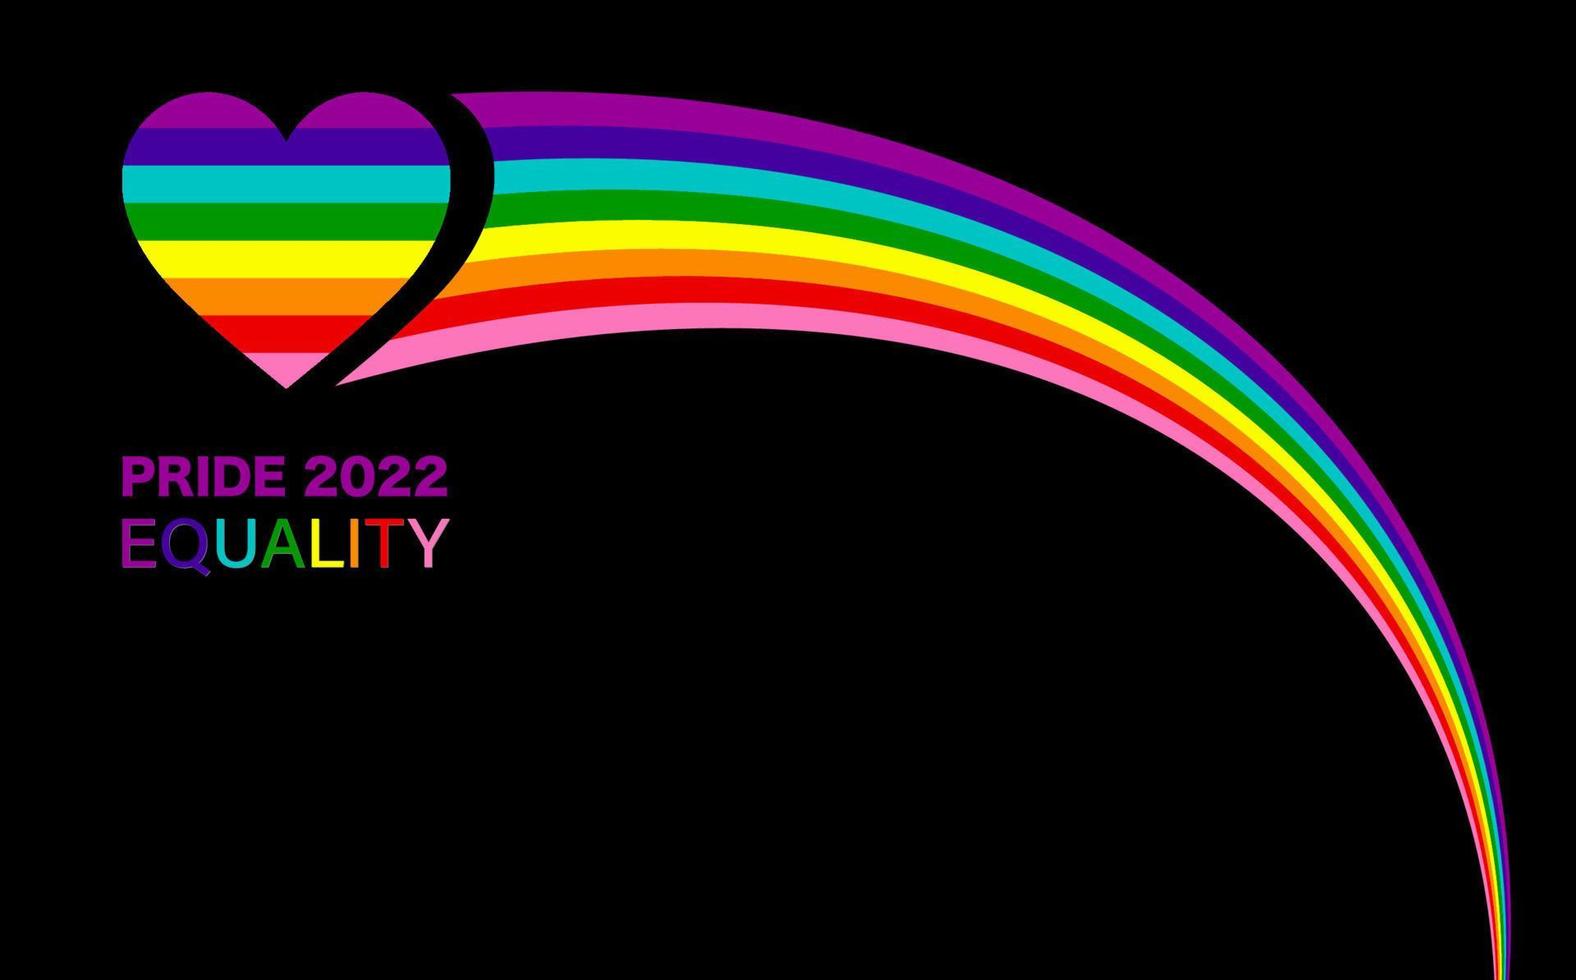 gay pride 2022 wave rainbow heart lgbtqia template. uguaglianza, inclusività. bandiera dell'orgoglio con il segno della bandiera lgbt. mese dell'orgoglio elemento di design colorato cornice bordo vettore isolato sfondo nero